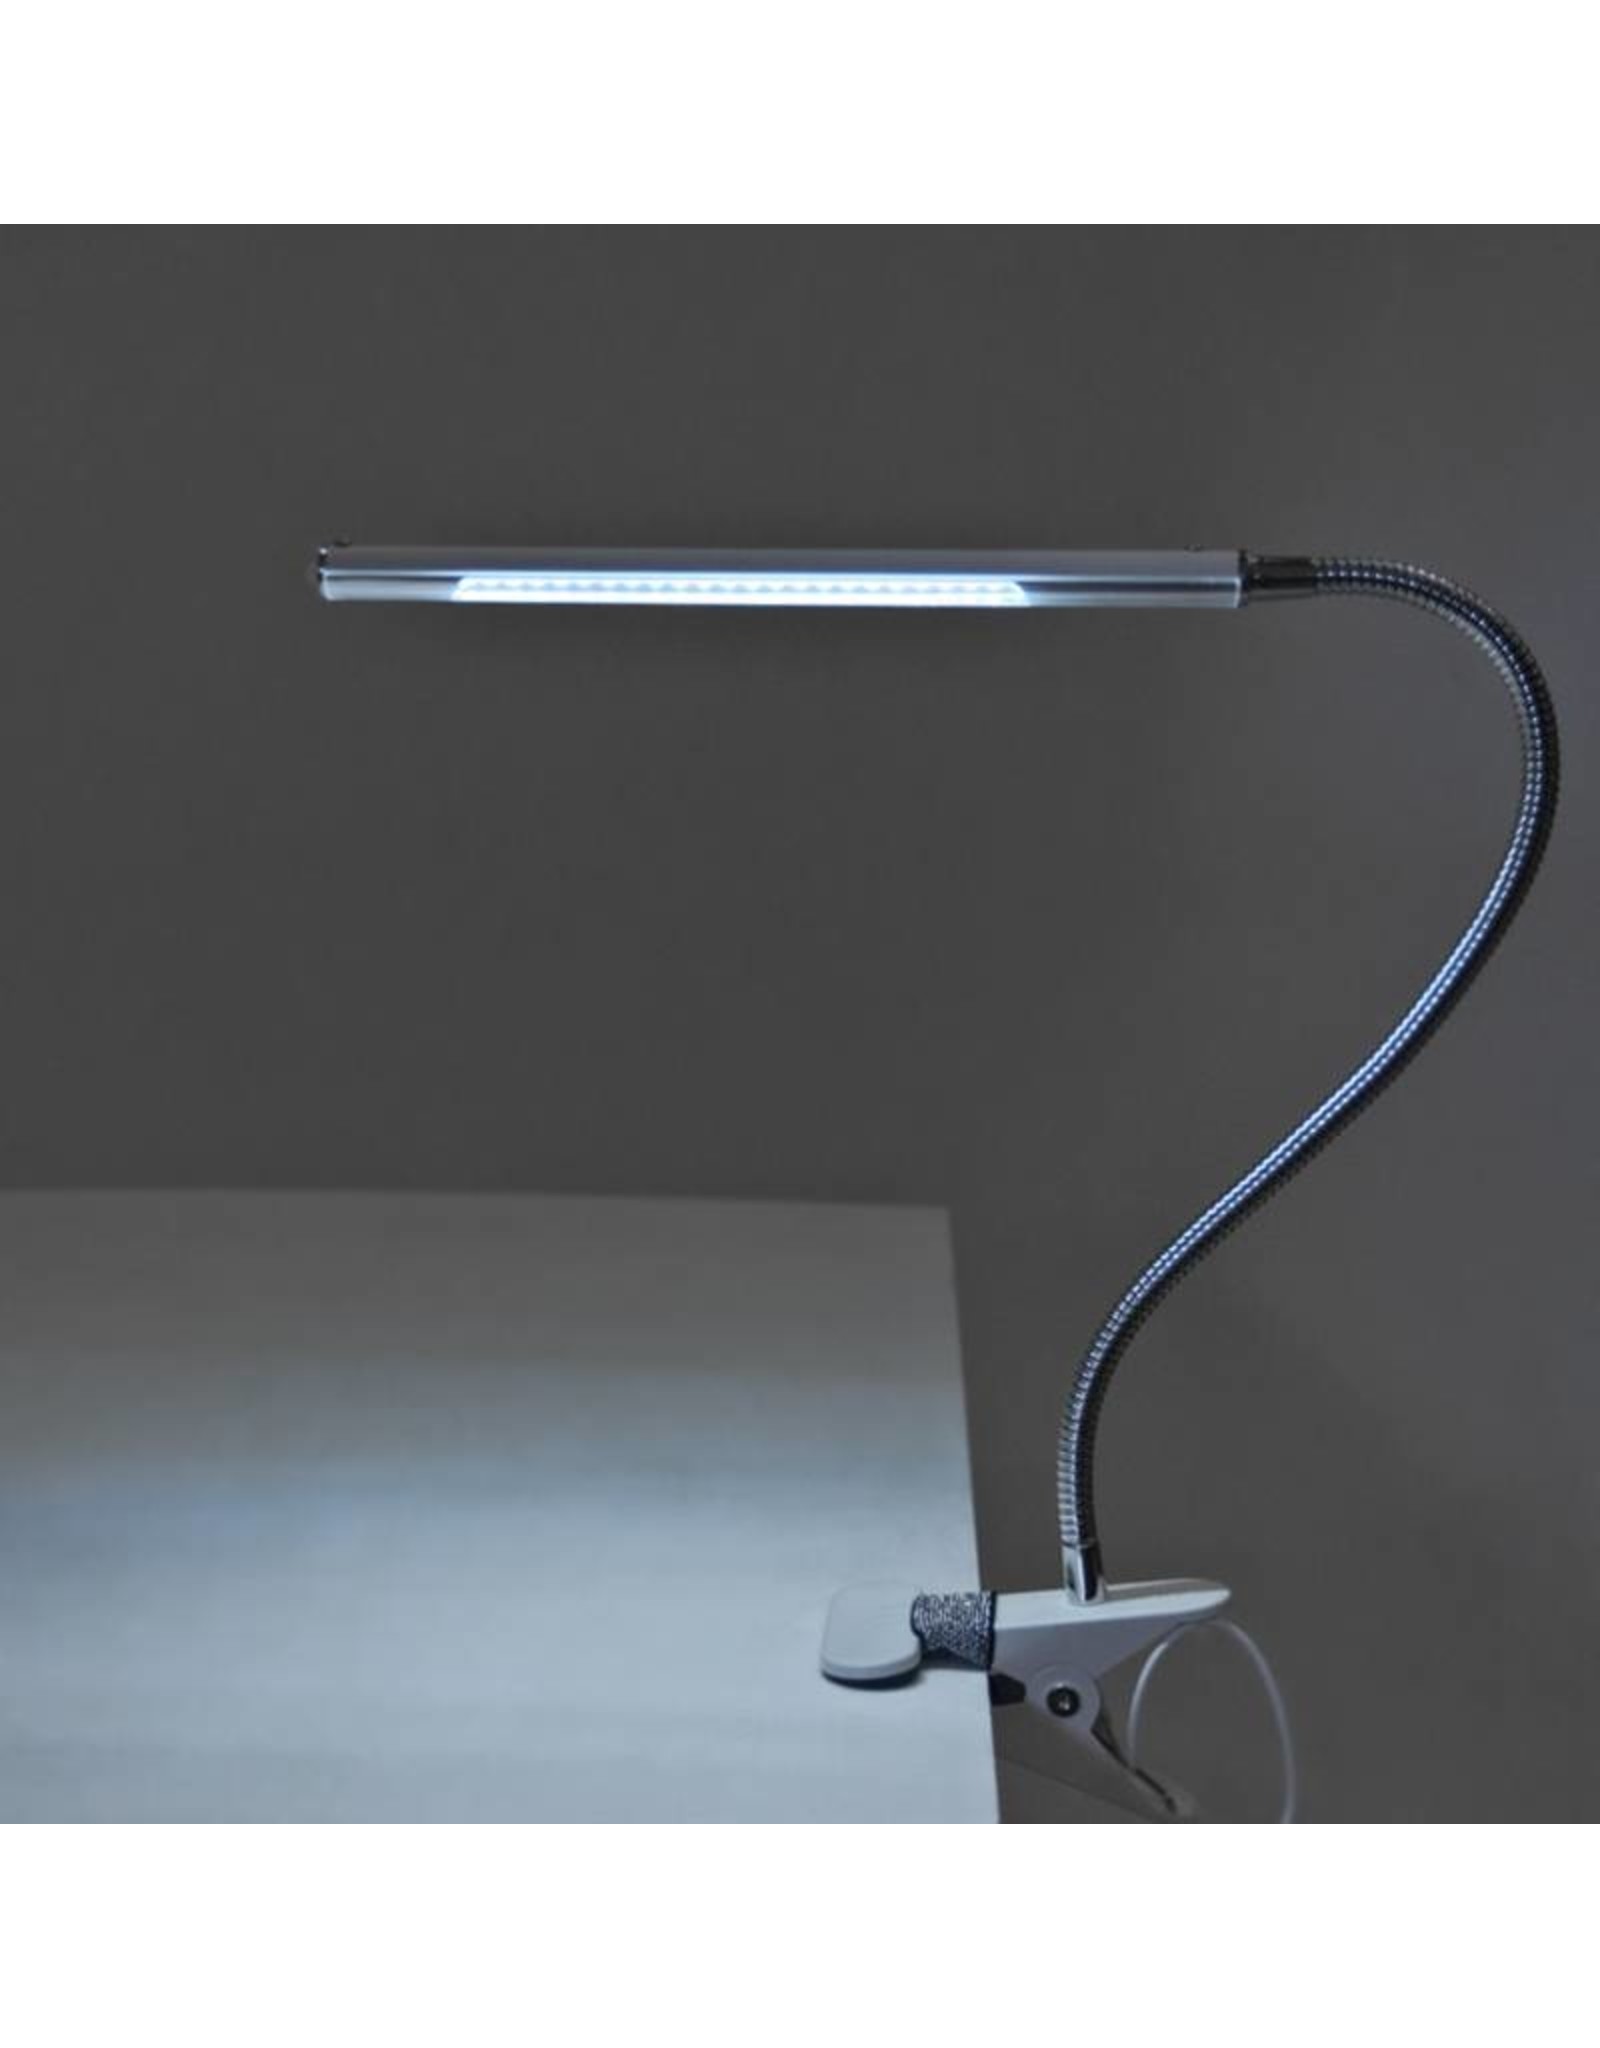 Merkloos LED Tafellamp Goud met een flexibele arm op tafelklem.